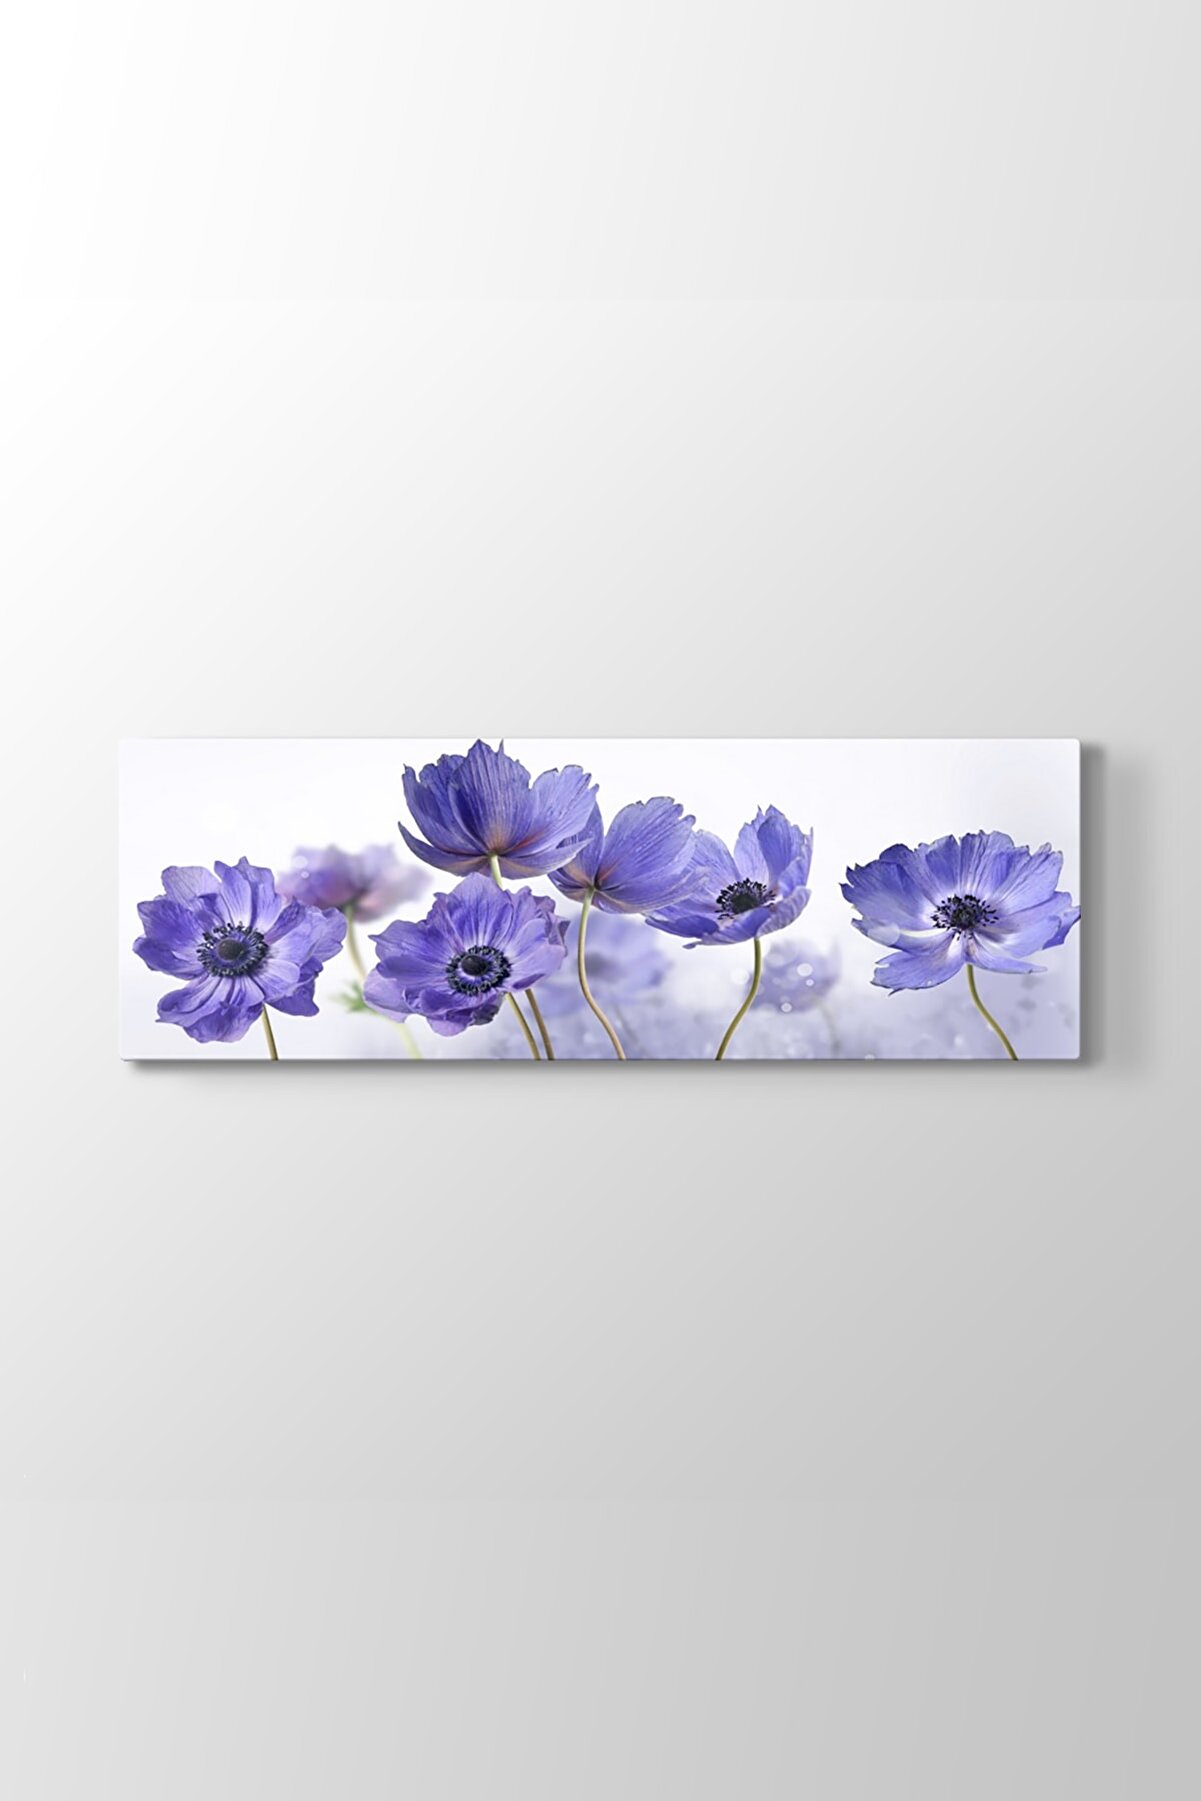 TabloShop Gelincik Çiçeği Art Tablosu (Model 4) - (ÖLÇÜSÜ 150x50 cm)